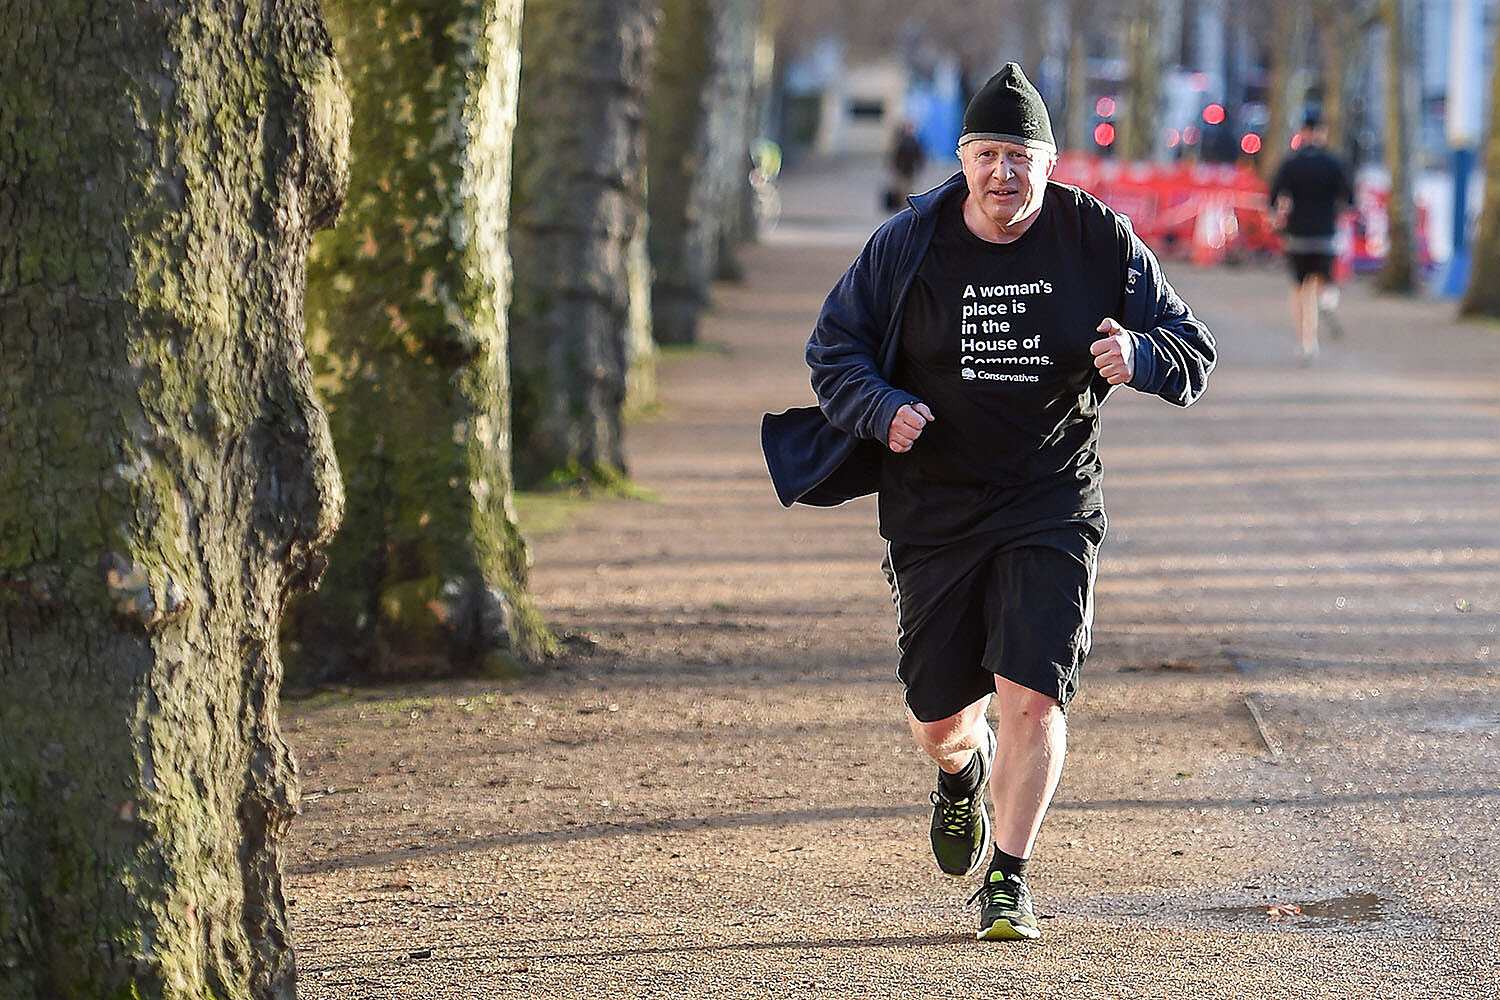 <p>Министр иностранных дел Великобритании Борис Джонсон во время пробежки в футболке с надписью: &laquo;Место женщины &mdash; в Палате общин&raquo;</p>